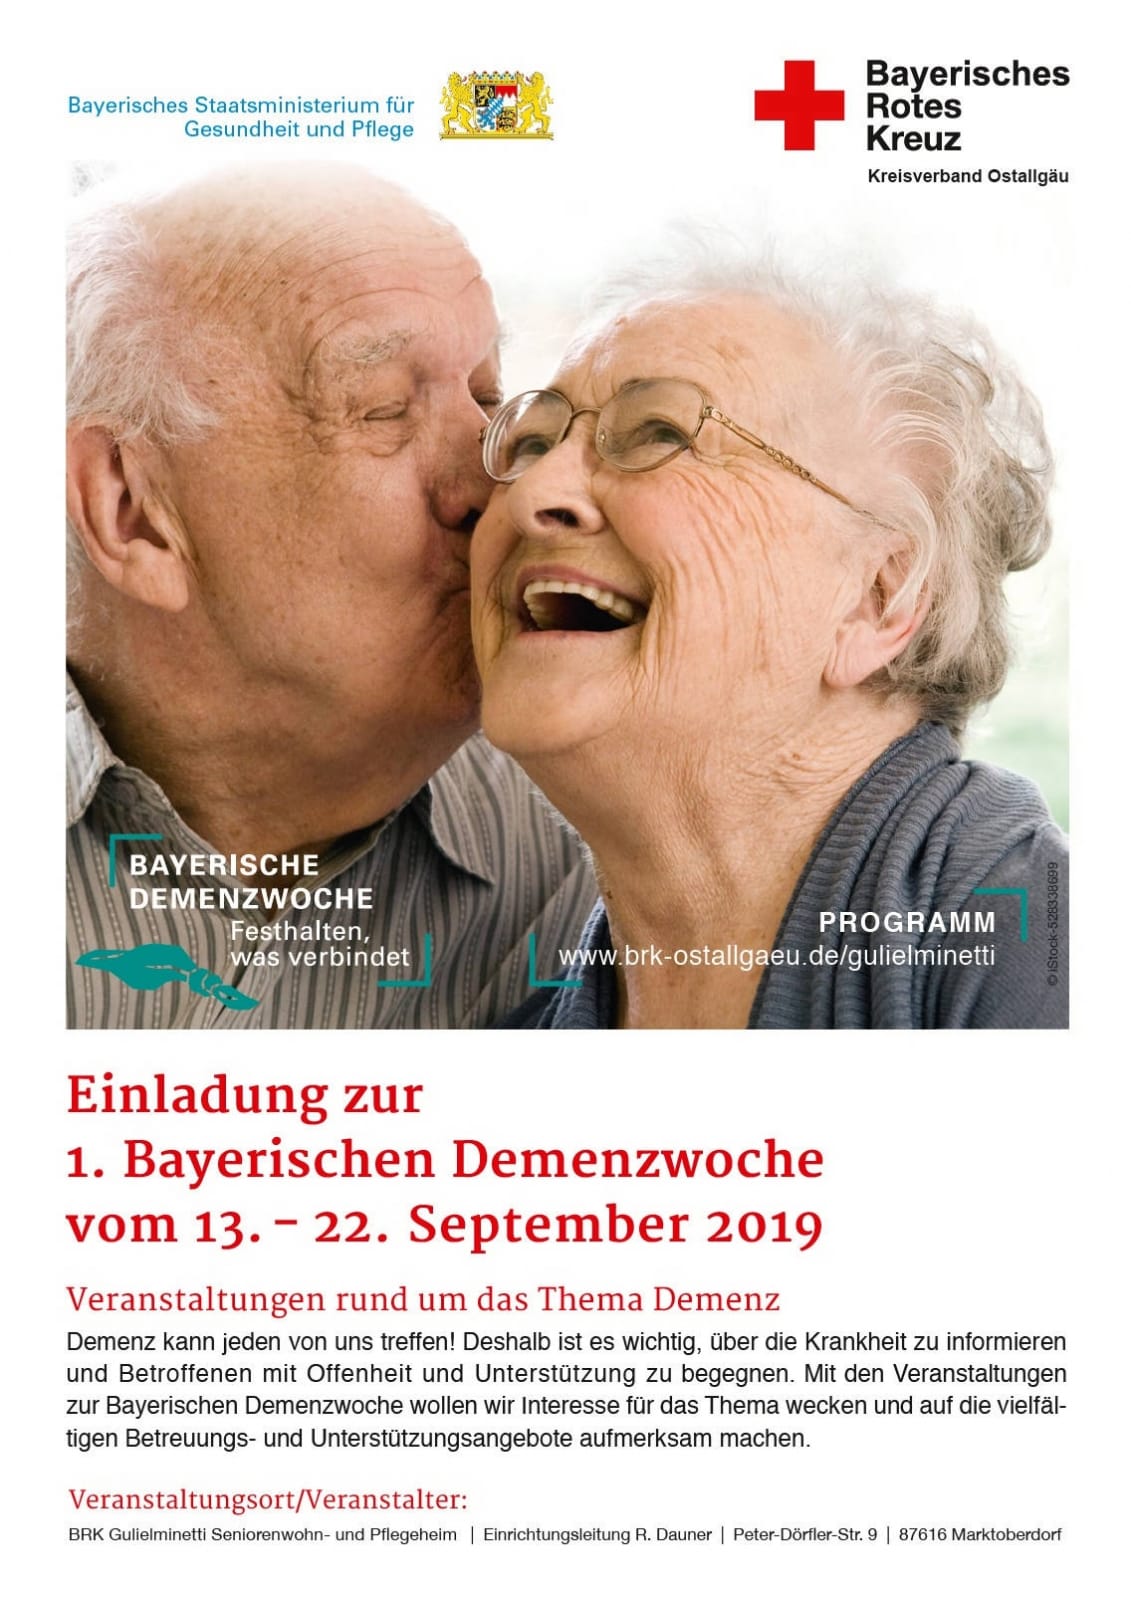 Das Programm zur Ersten Bayerischen Demenzwoche im Gulielminetti Seniorenwohn- und Pflegeheim (PDF). Foto: iStock-528338699